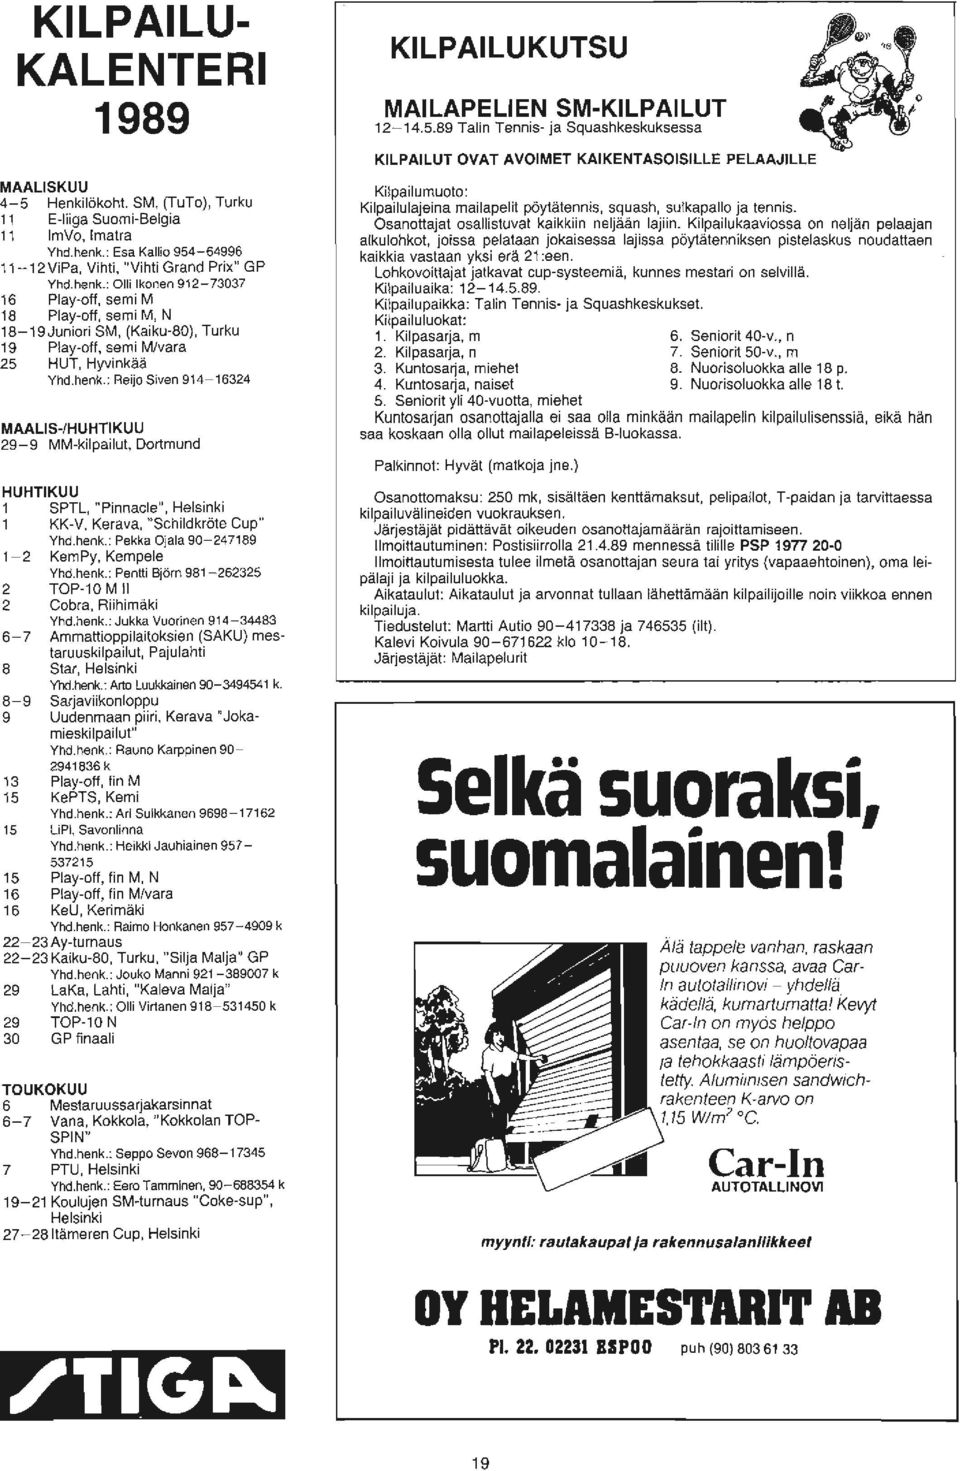 : Olli Ihonen 912-73037 16 Play-off, semi M 18 Play-off, semi M, N 18-19Juniori SM, (Kaiku-80), Turku 19 Play-off, semi M/vara 25 HUT, Hyvinkaa Yhd.henk.